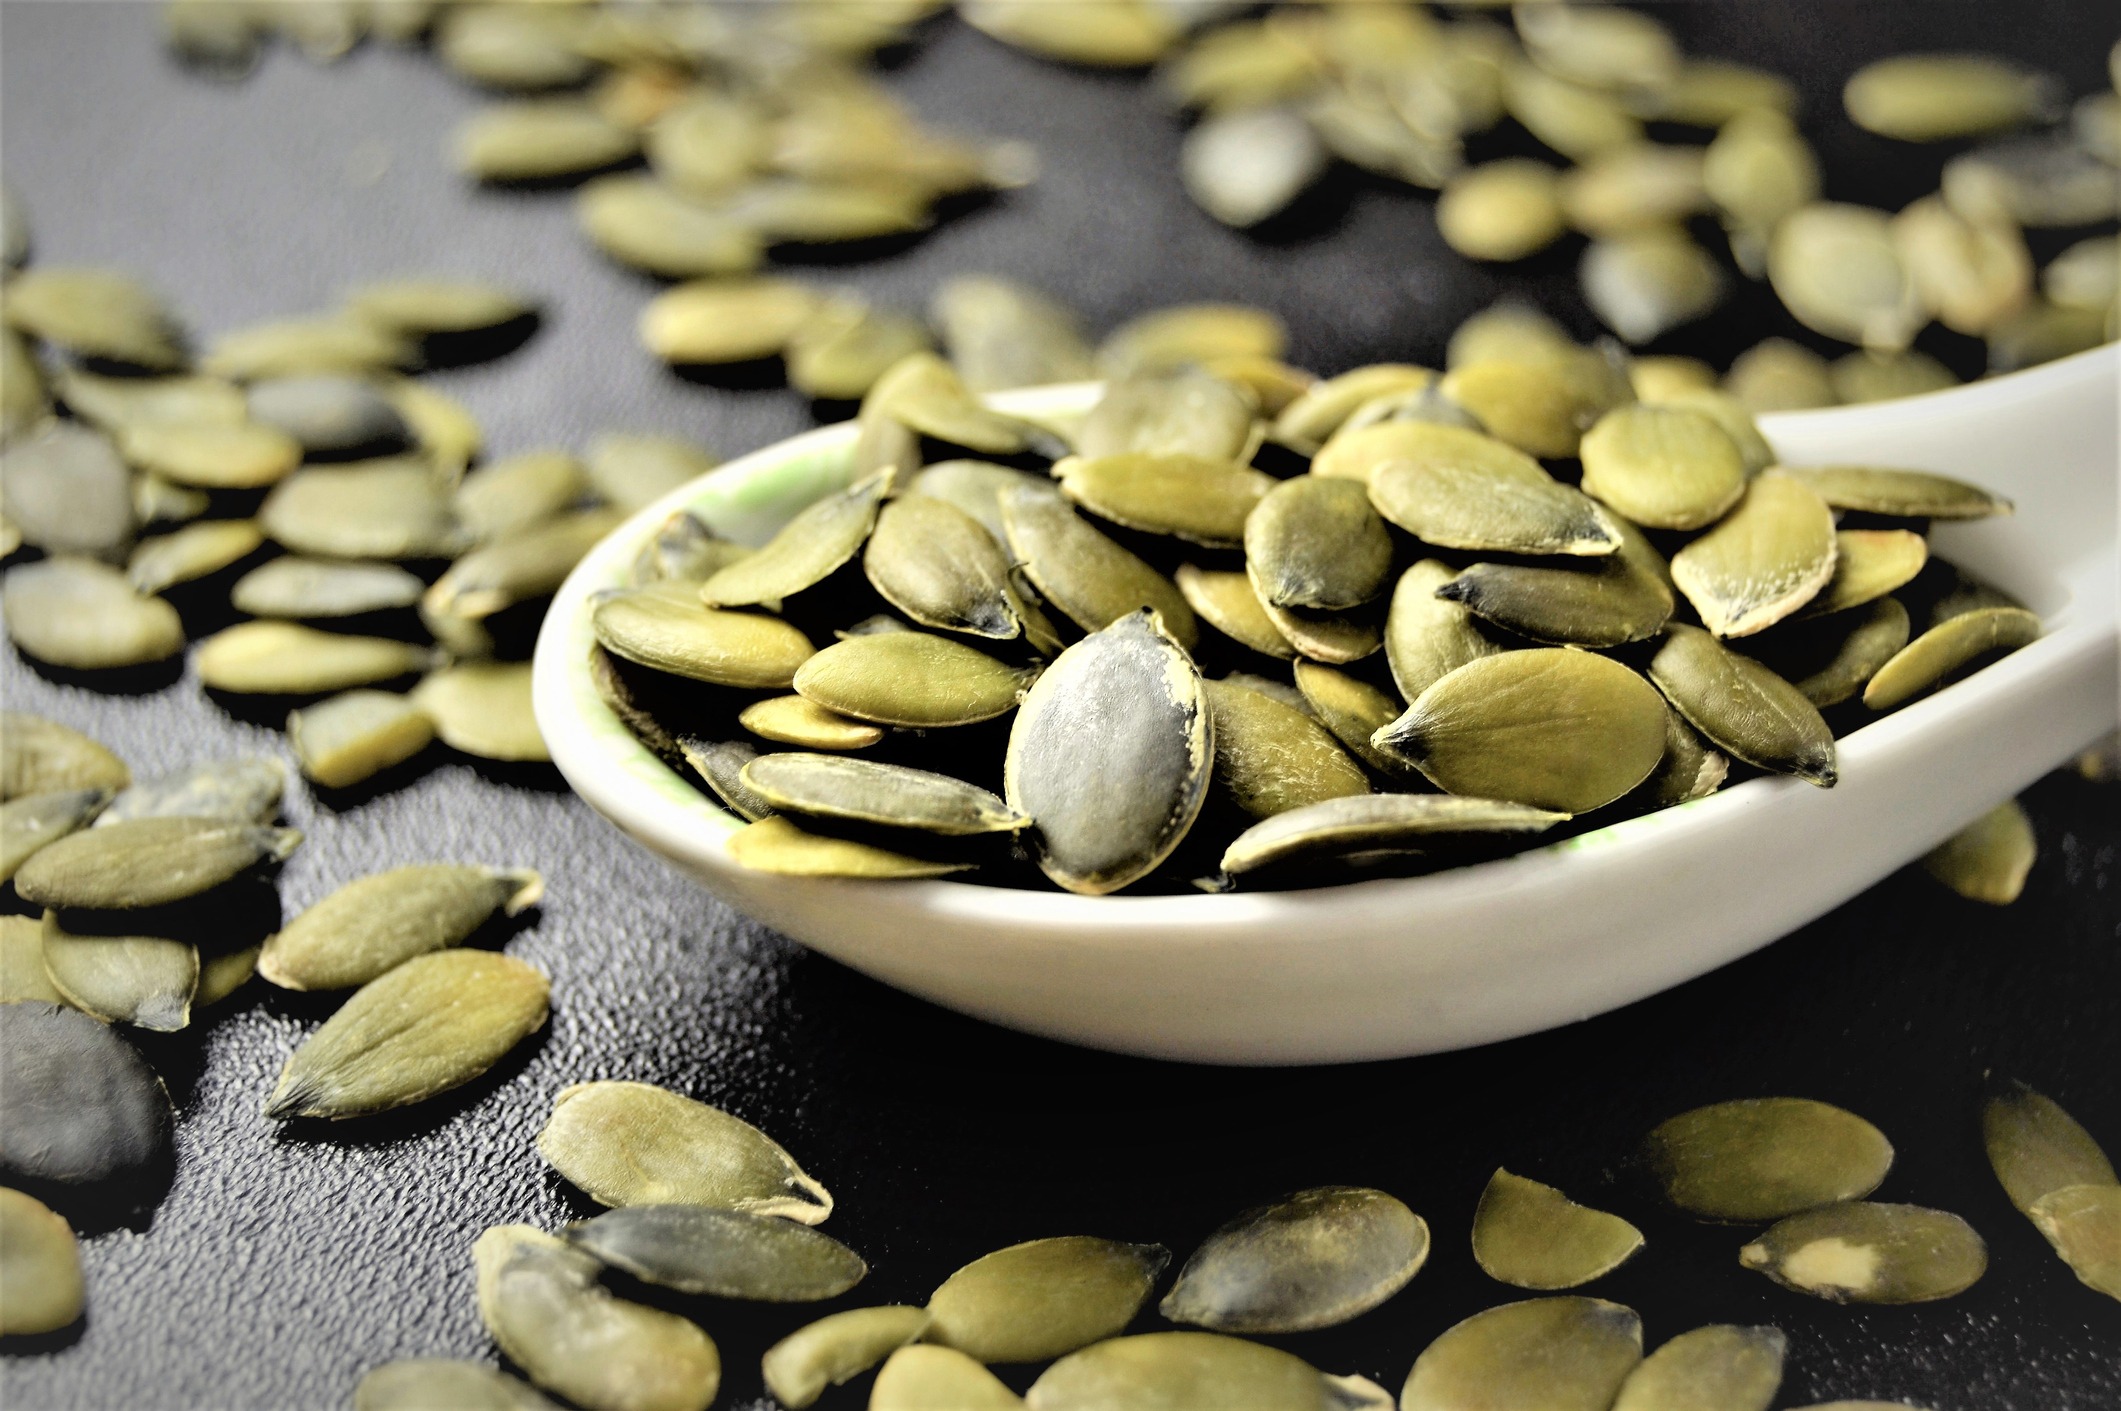 Les bienfaits des graines de lin pour la santé - MYPROTEIN™